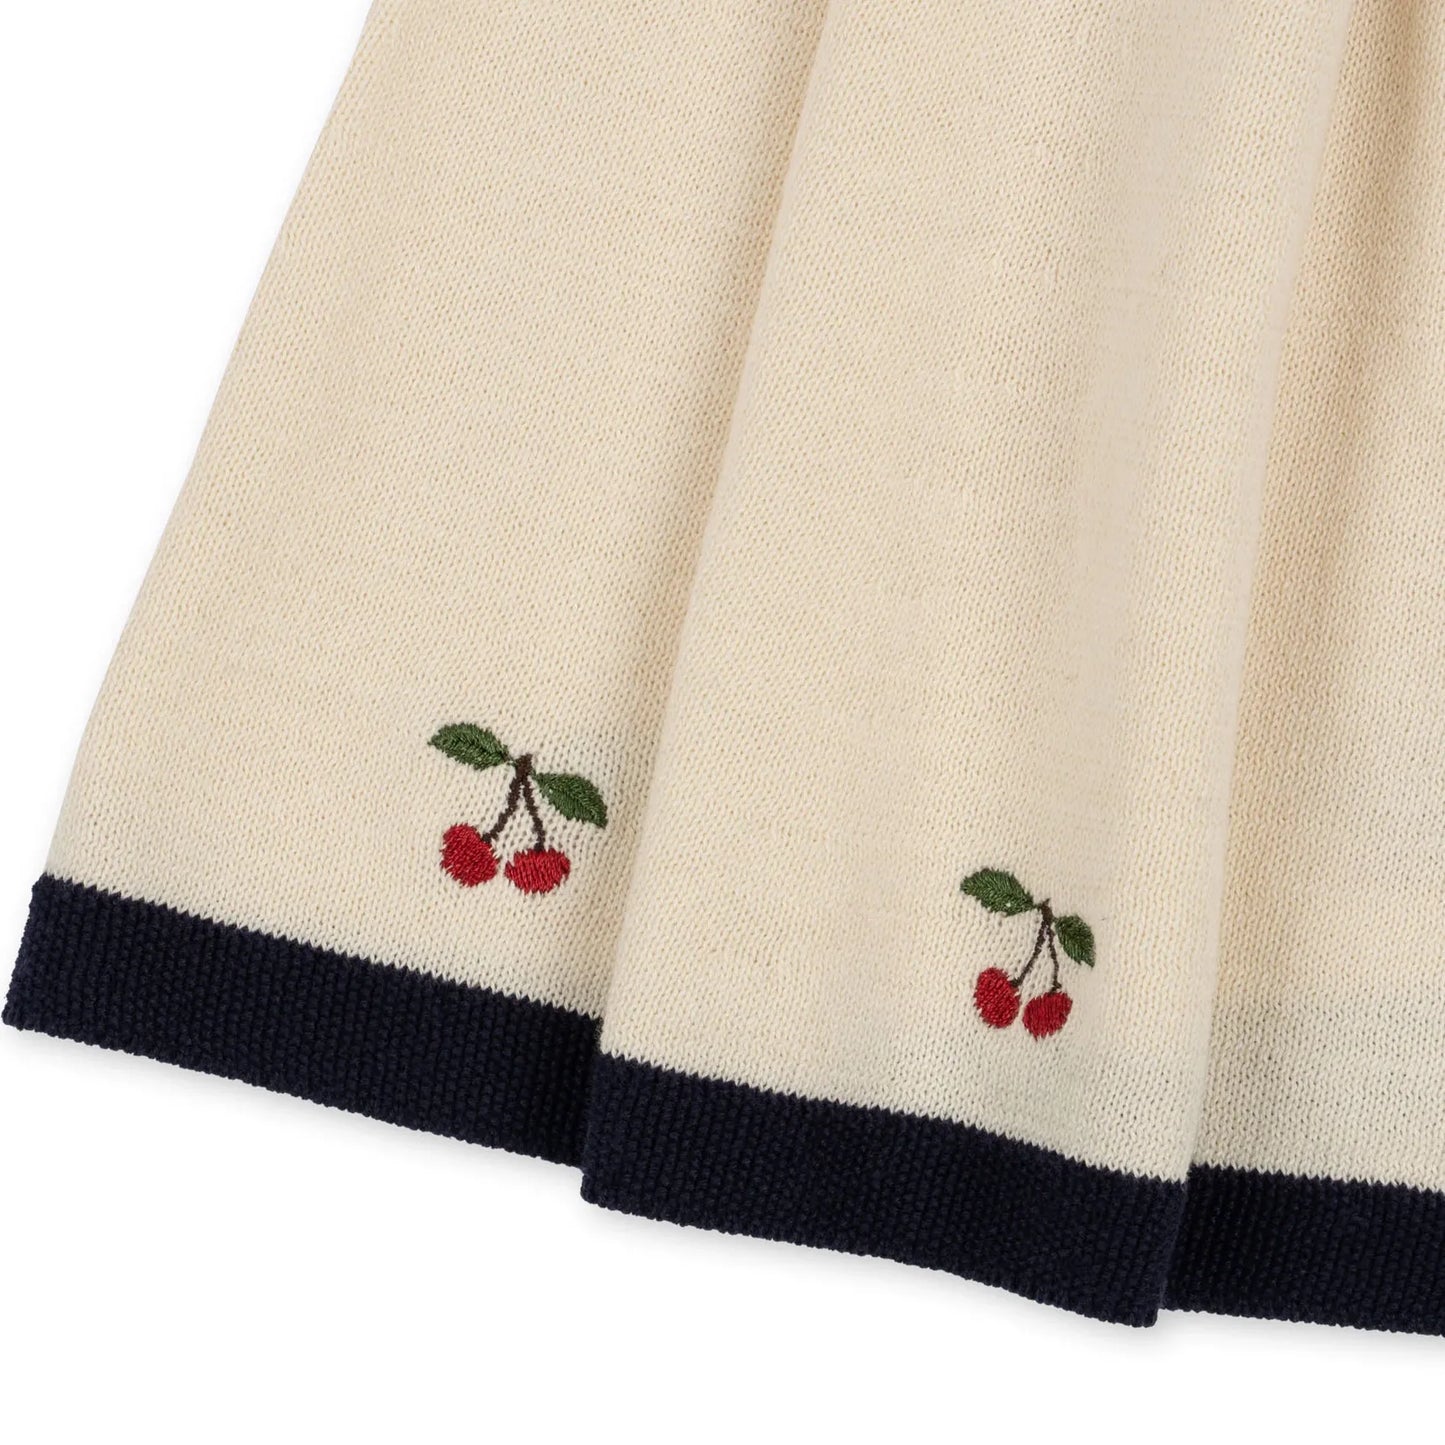 Venton Knit Skirt - Off White